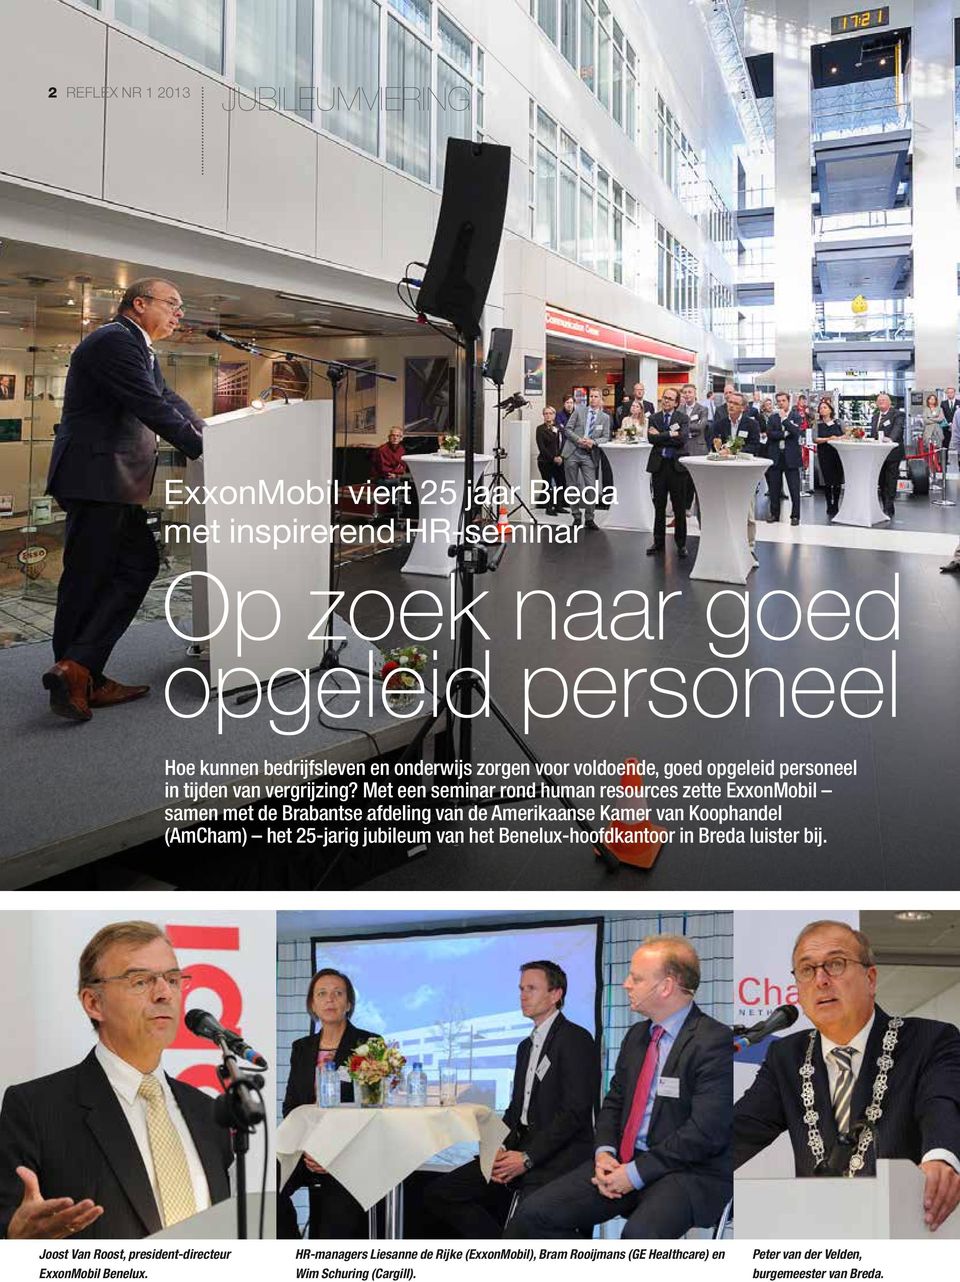 Met een seminar rond human resources zette ExxonMobil samen met de Brabantse afdeling van de Amerikaanse Kamer van Koophandel (AmCham) het 25-jarig jubileum van